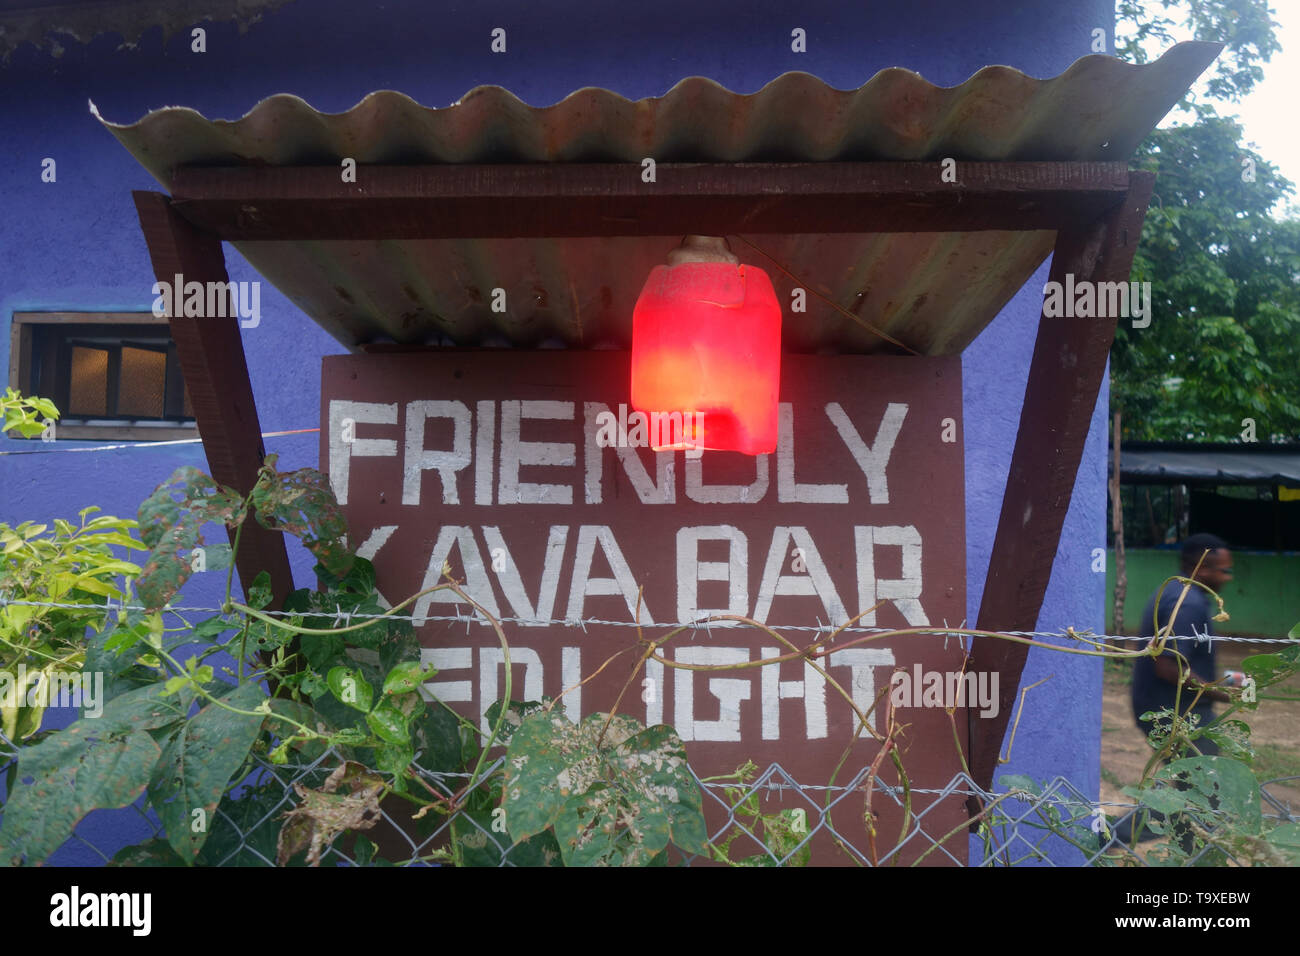 Signe pour Friendly Kava Bar (lumière rouge), Luganville, Espiritu Santo, Vanuatu. Pas de monsieur ou PR Banque D'Images